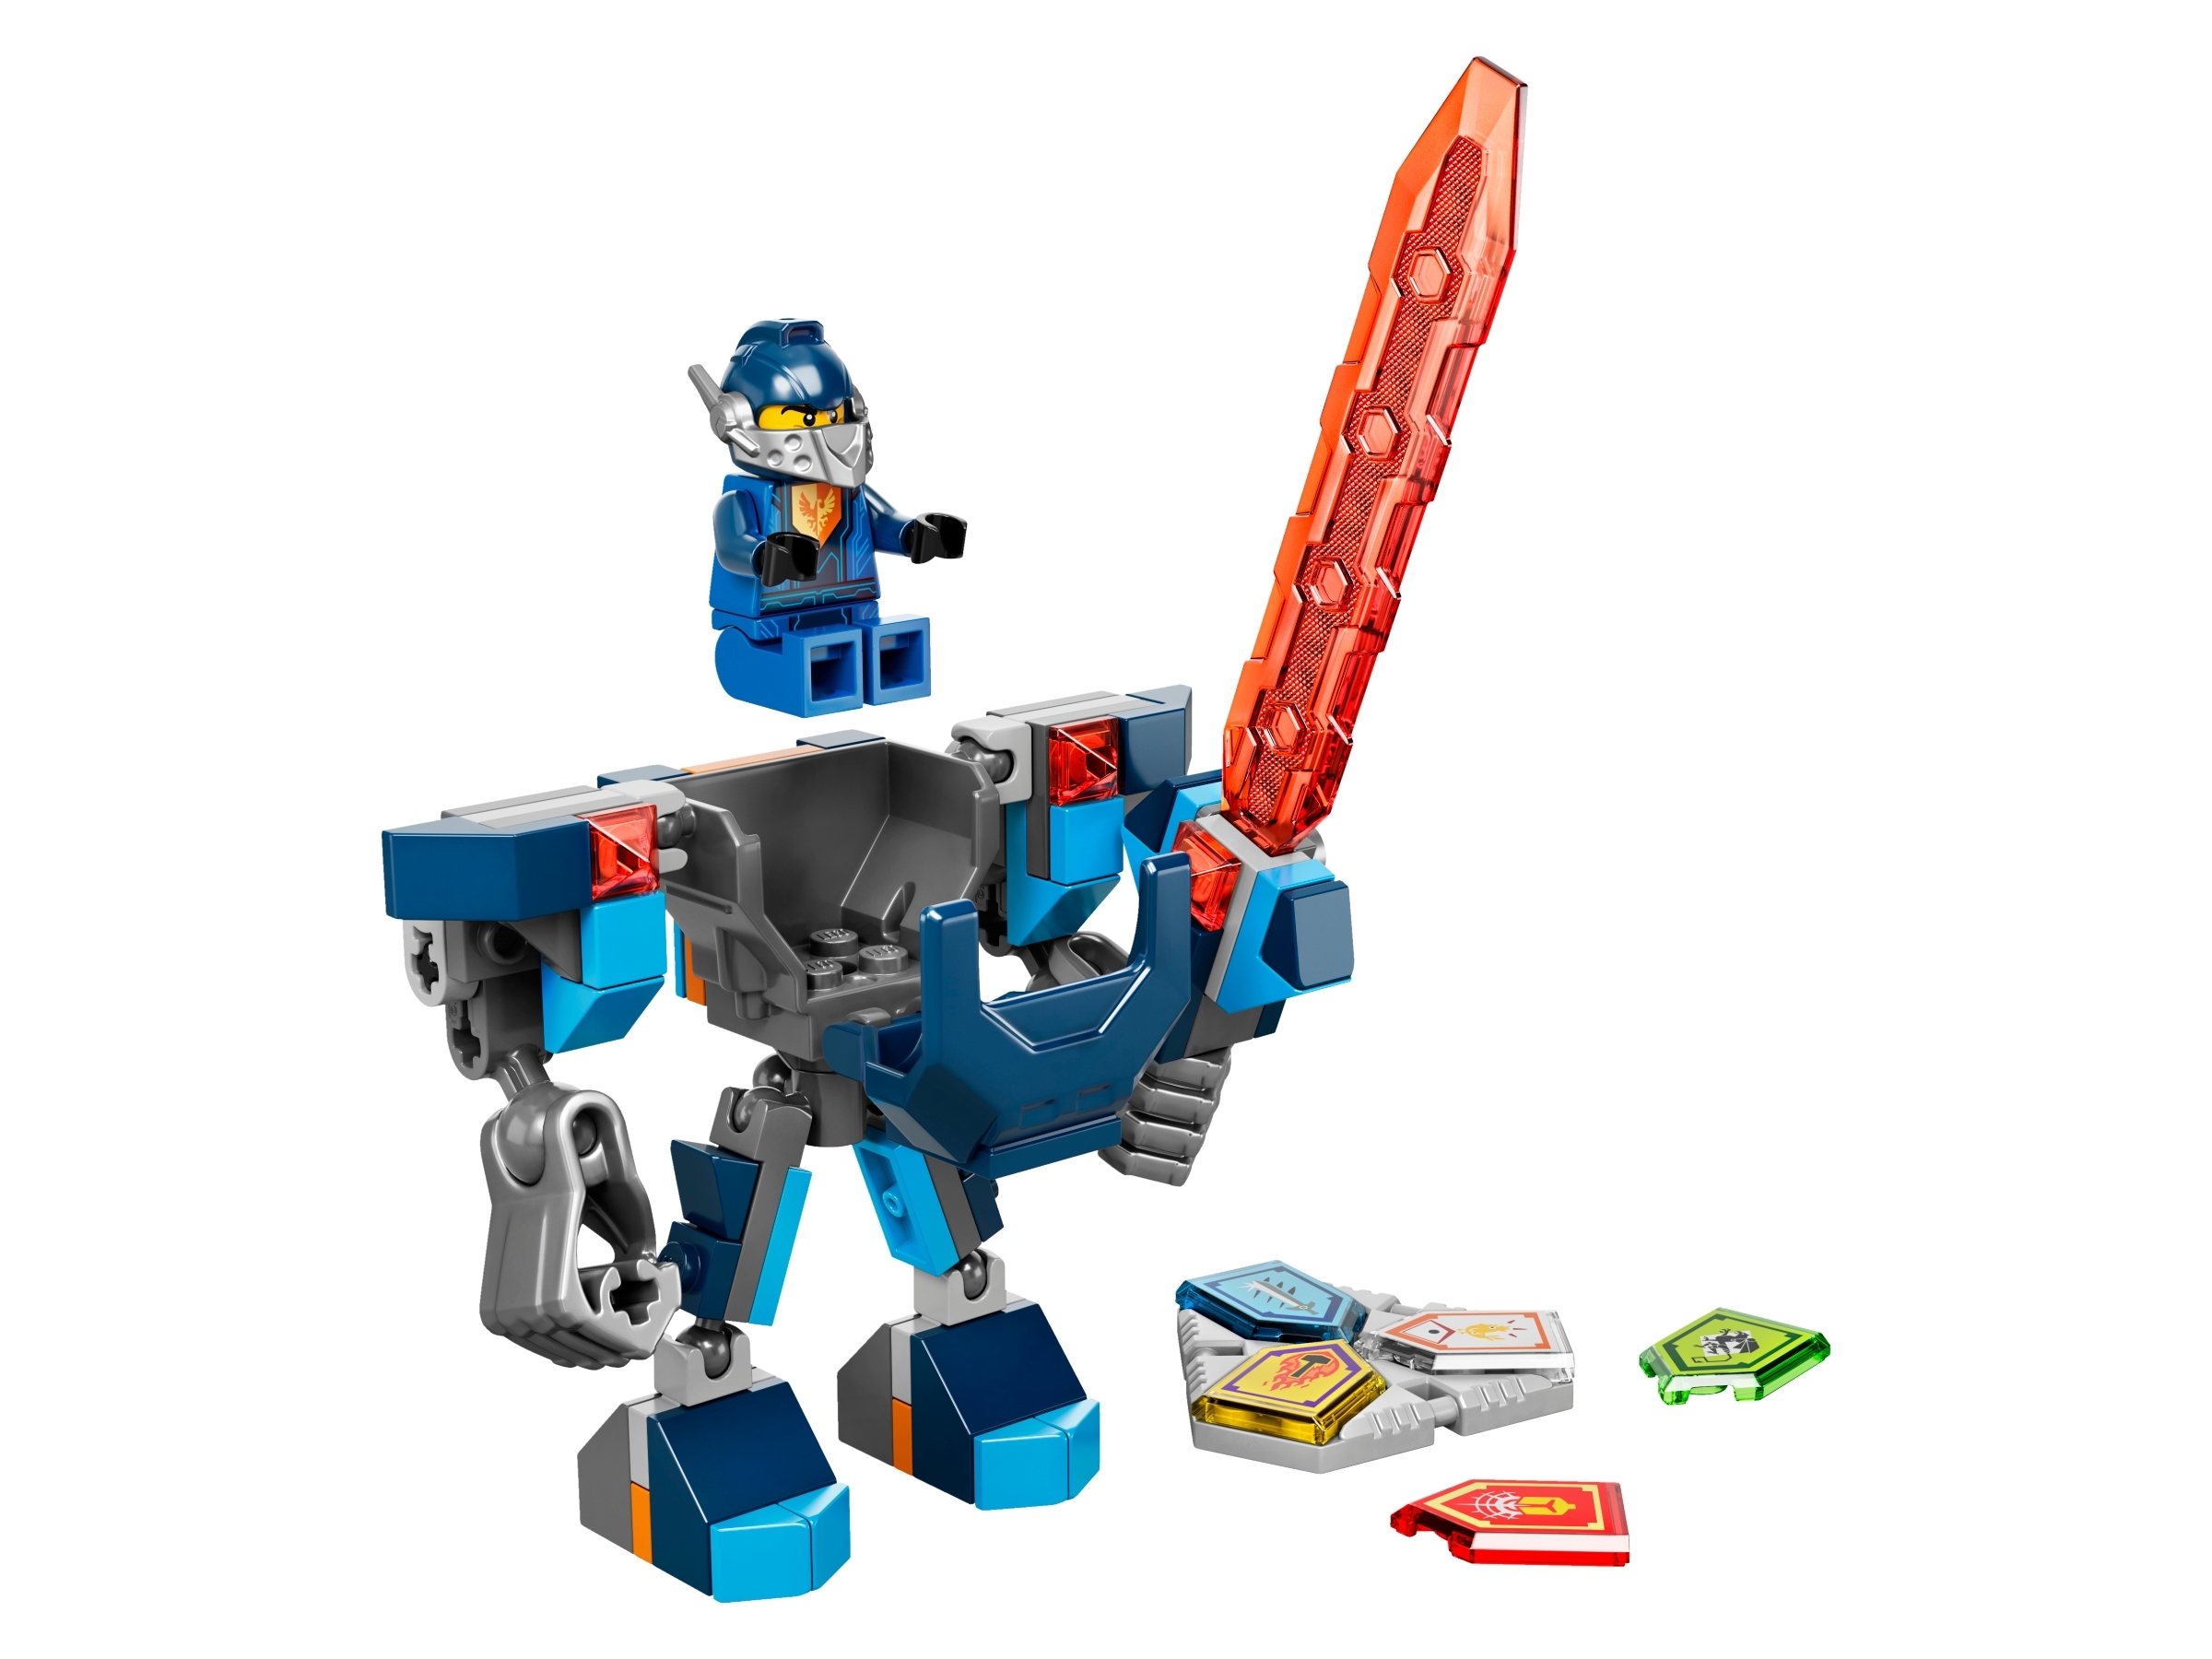 LEGO 2 x Kelle Polizeikelle 3900pb01 weiß bedr POLICE 3350 6332 6636 6549 